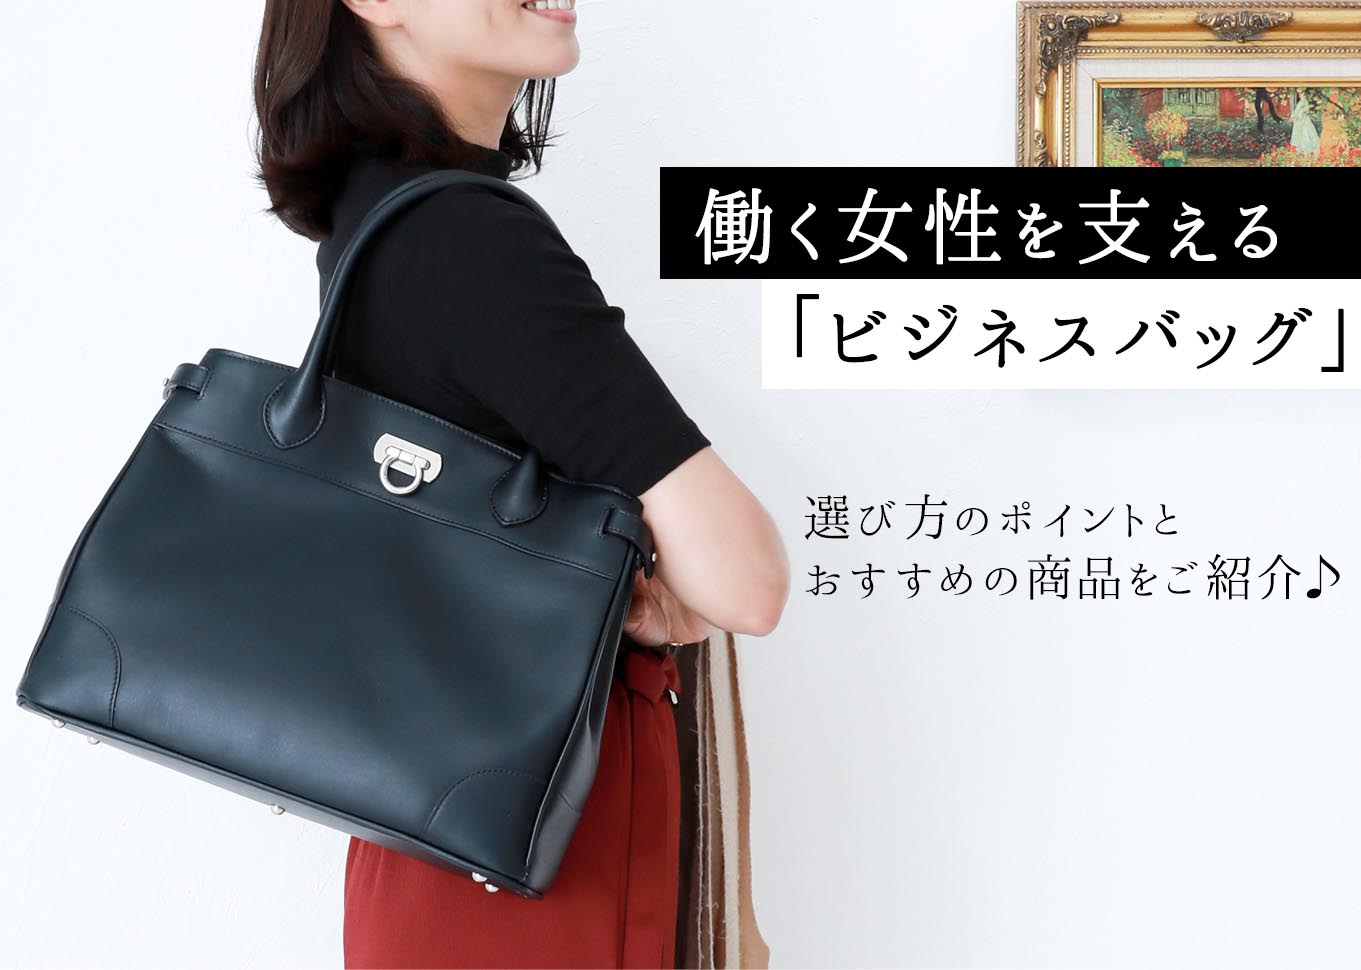 働く女性を支える ビジネスバッグ選 お仕事にぴったりなレディースバッグのブランドと選び方もご紹介